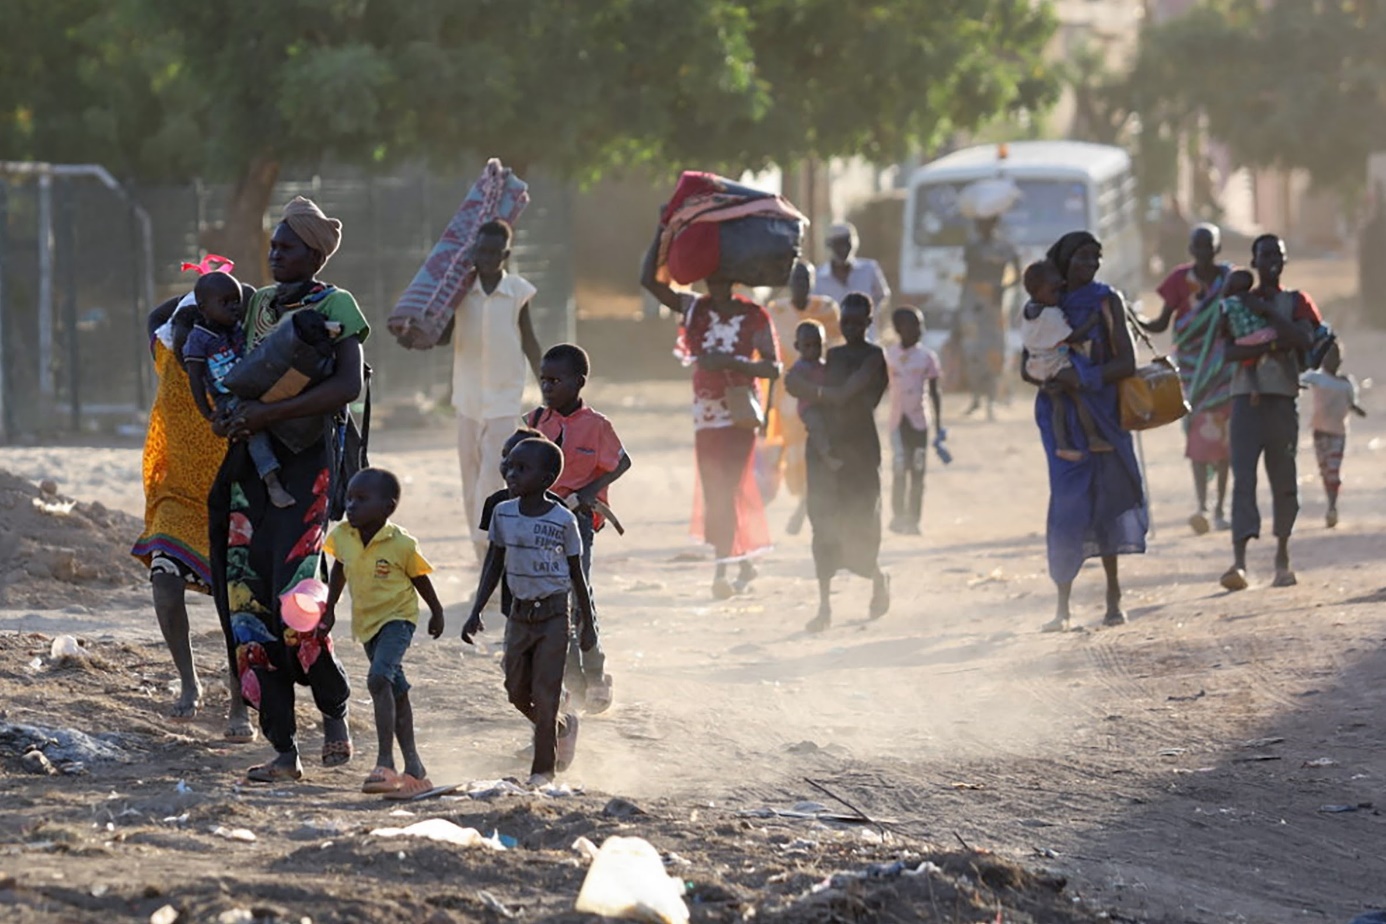 “De internationale gemeenschap heeft onvoldoende druk uitgeoefend op de strijdende partijen om te stoppen met het schenden van de mensenrechten van de mensen die in deze oorlog verwikkeld zijn”, zegt Amnesty International in een recent rapport (foto: Amnesty International).